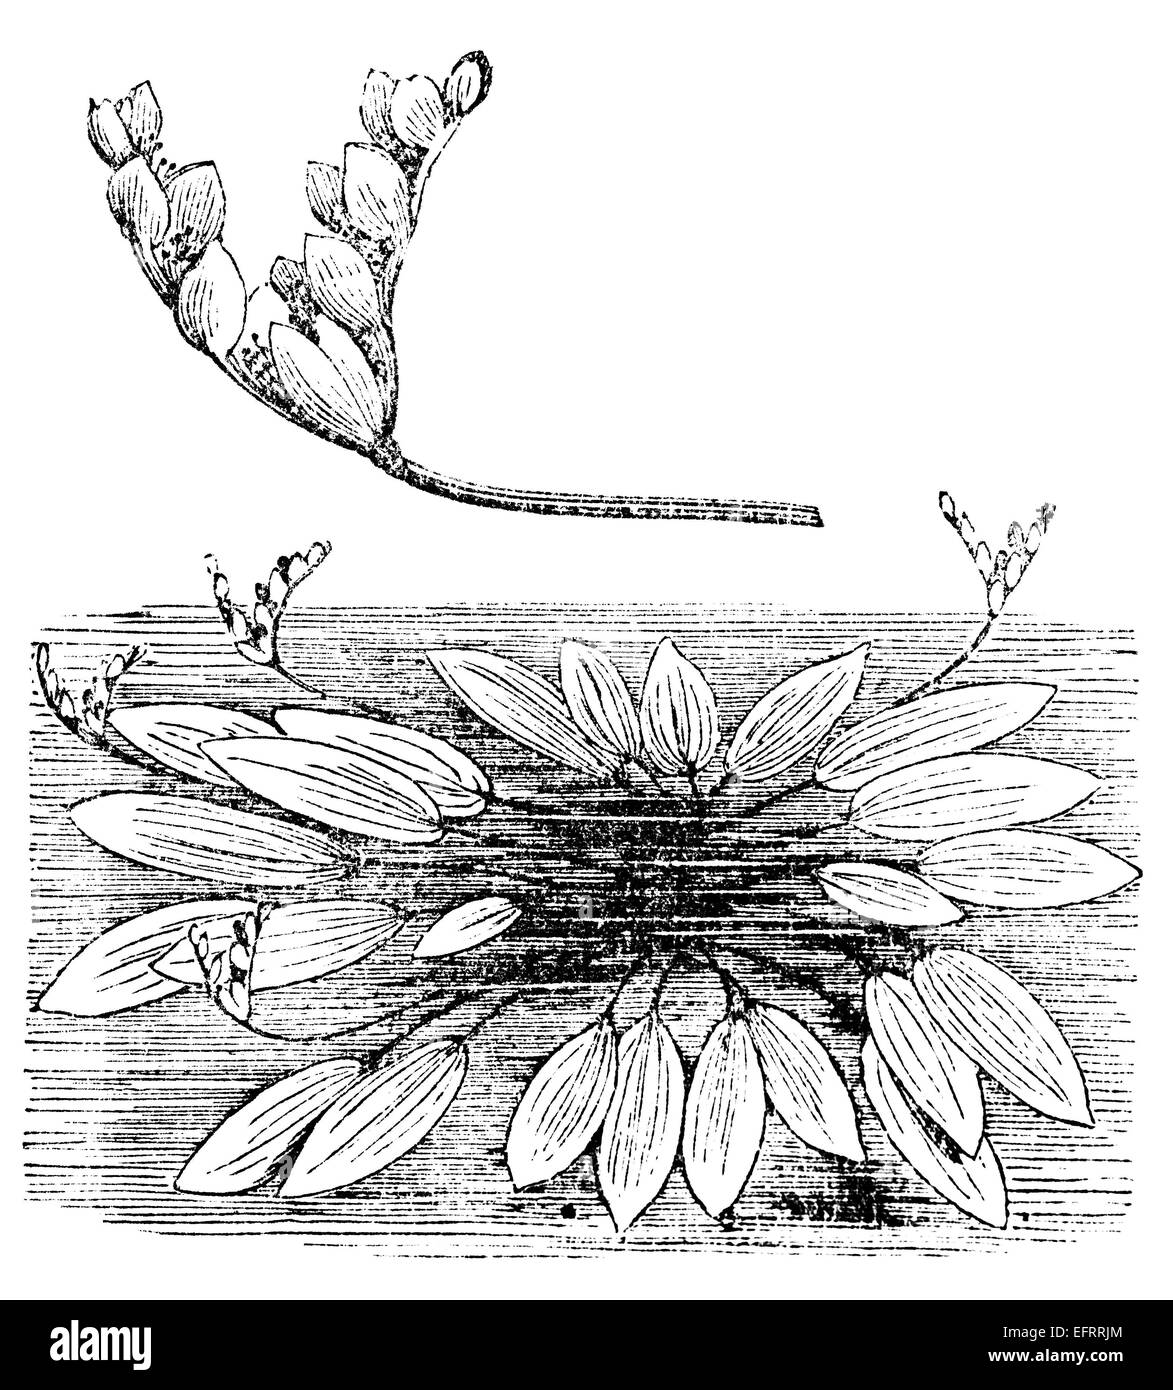 La gravure de l'époque victorienne d'un étang, mauvaises herbes ou Cap aponogeton. Image restaurée numériquement à partir d'un milieu du xixe siècle l'encyclopédie. Banque D'Images